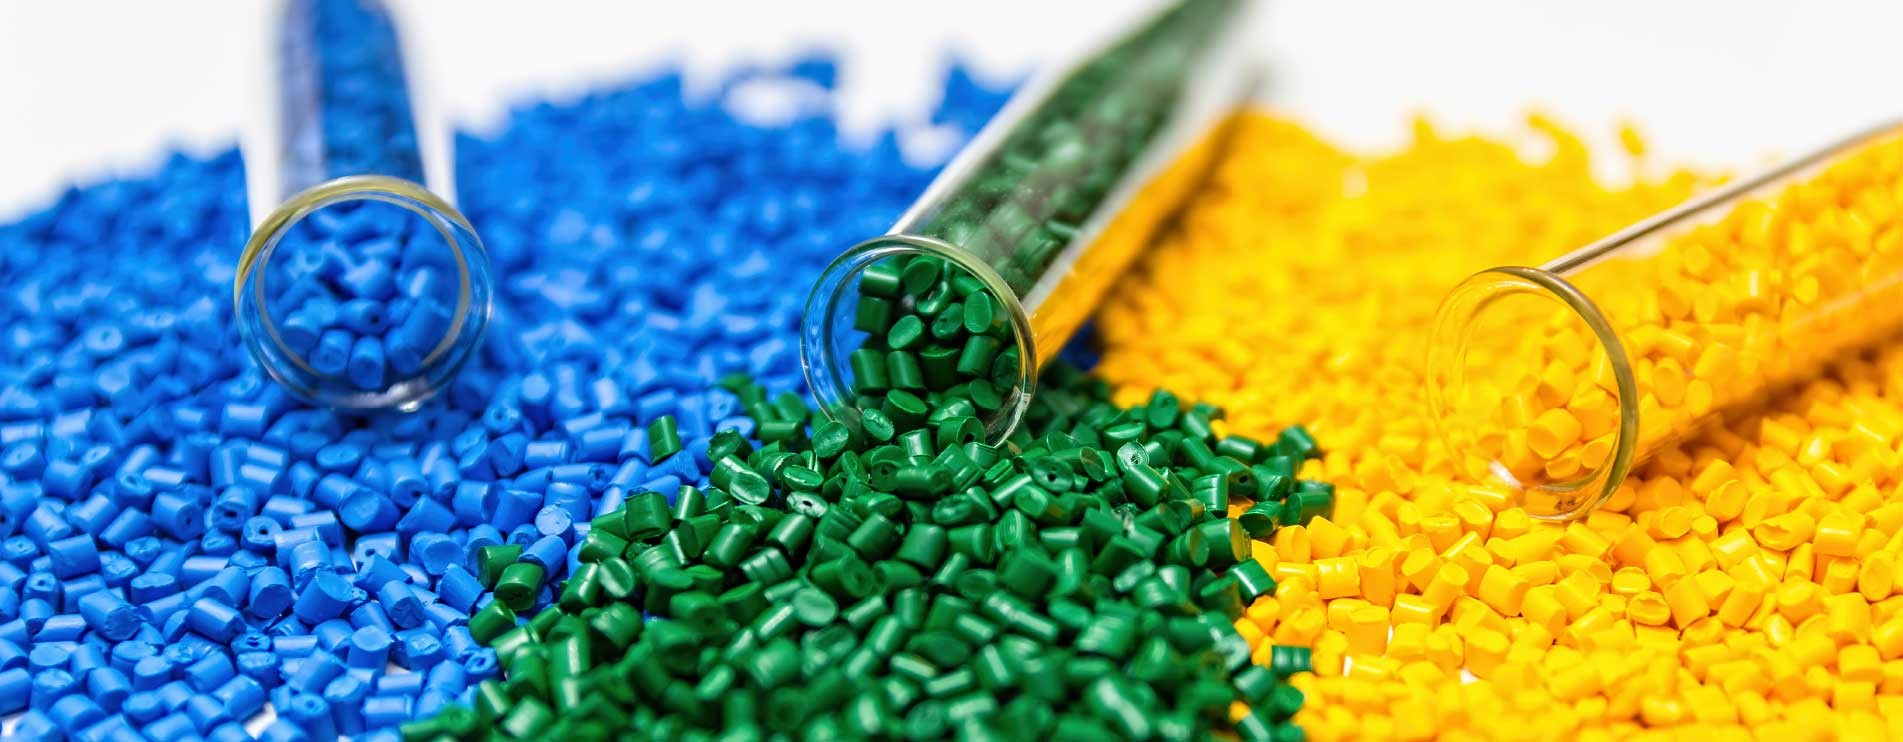 مهم ترین مواد اولیه پلاستیک سازی کدام اند؟